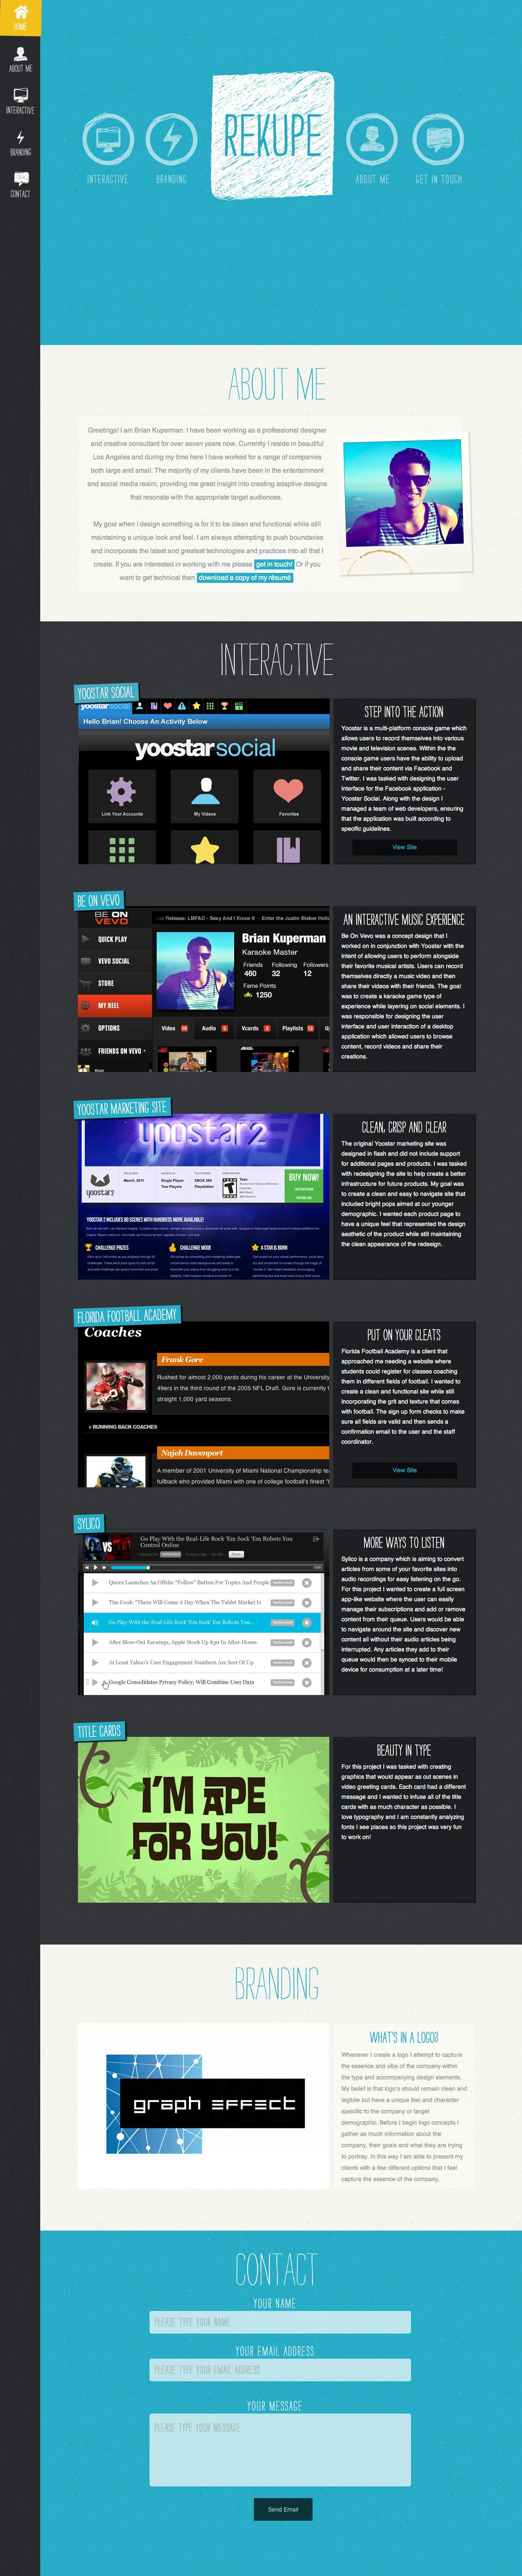 Rekupe Website Screenshot